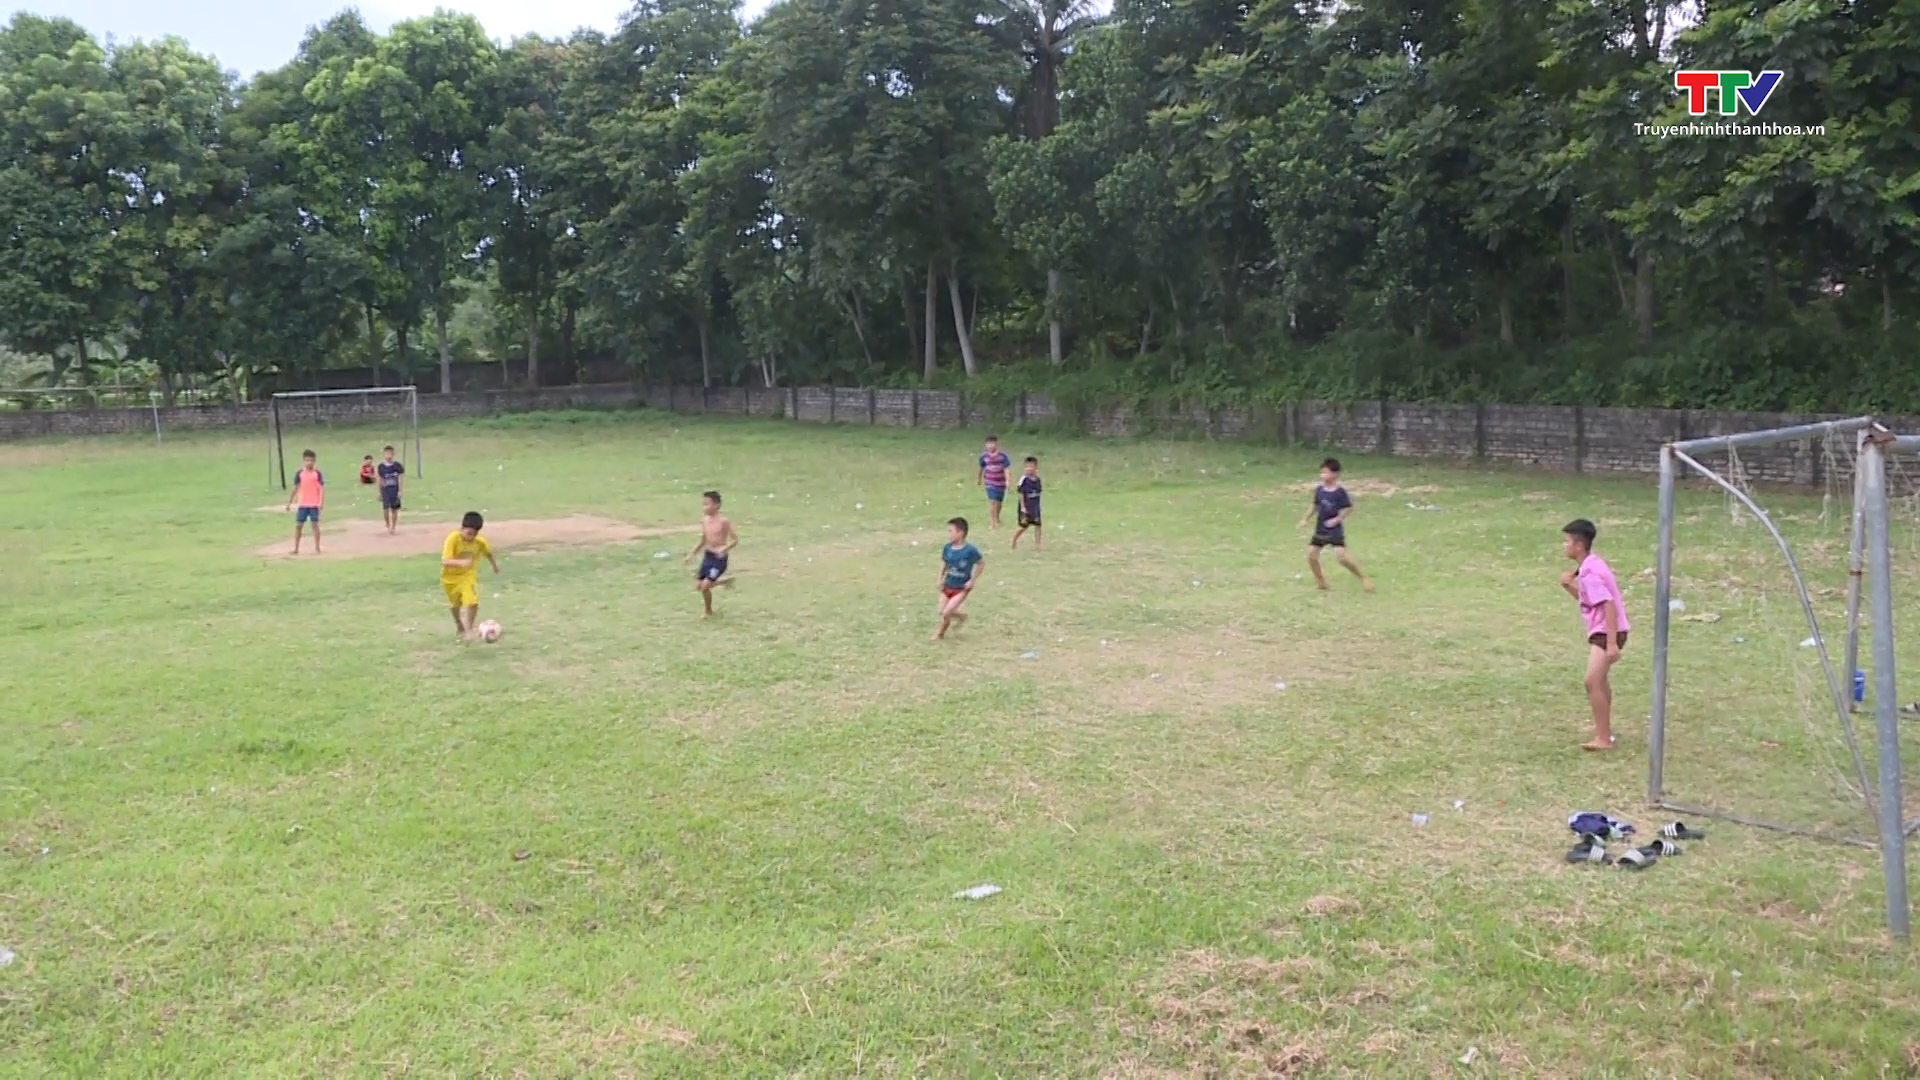 Xây dựng sân chơi cho trẻ em tại các huyện miền núi- Ảnh 2.